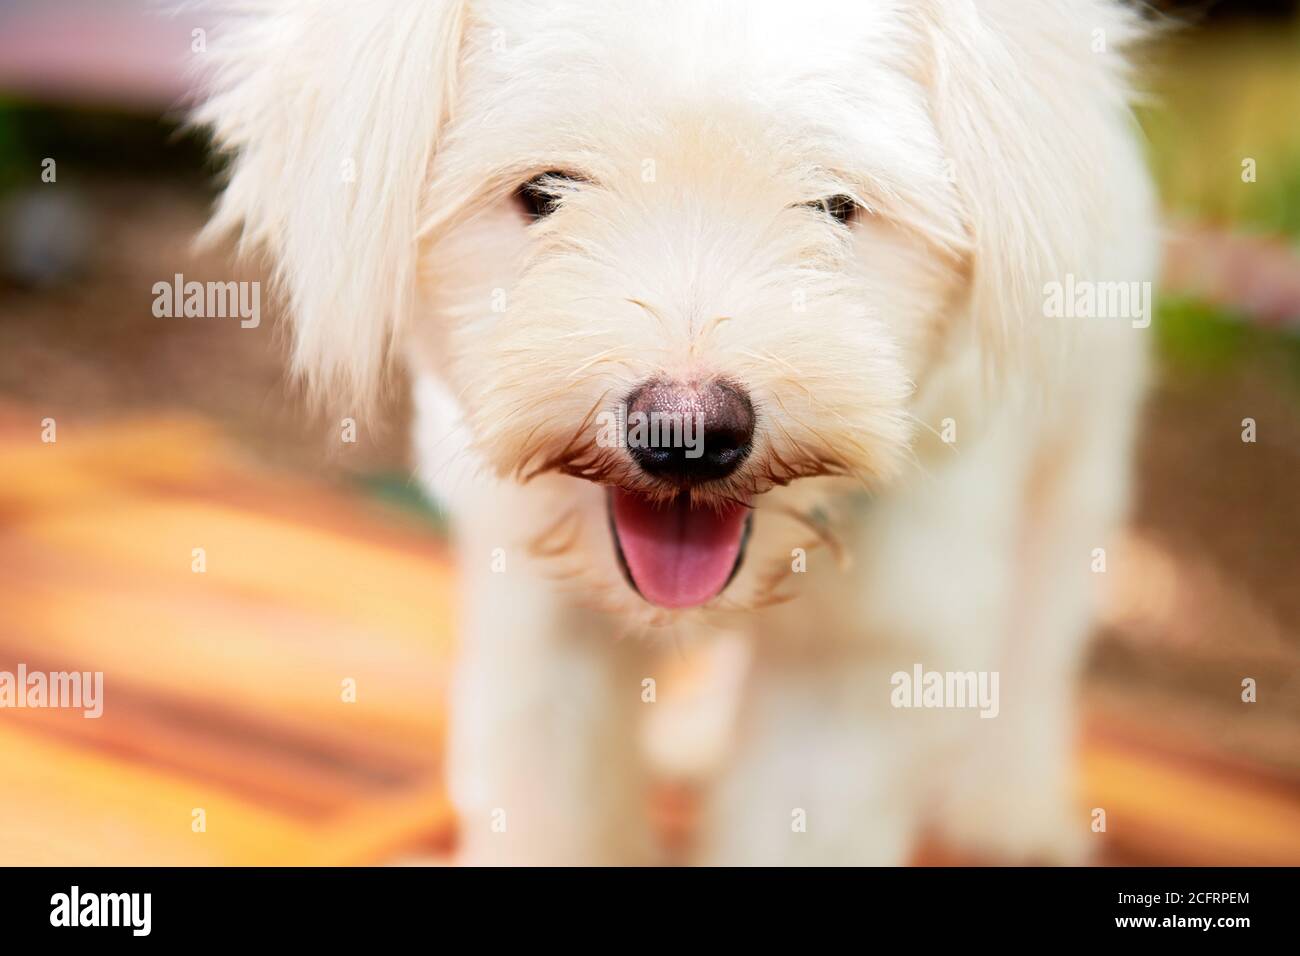 Porträt eines lustigen kleinen Hundes mit langen weißen Haaren und tong aus dem Mund hängen, starker Augenkontakt, mit verschwommenem bunten Hintergrund Stockfoto